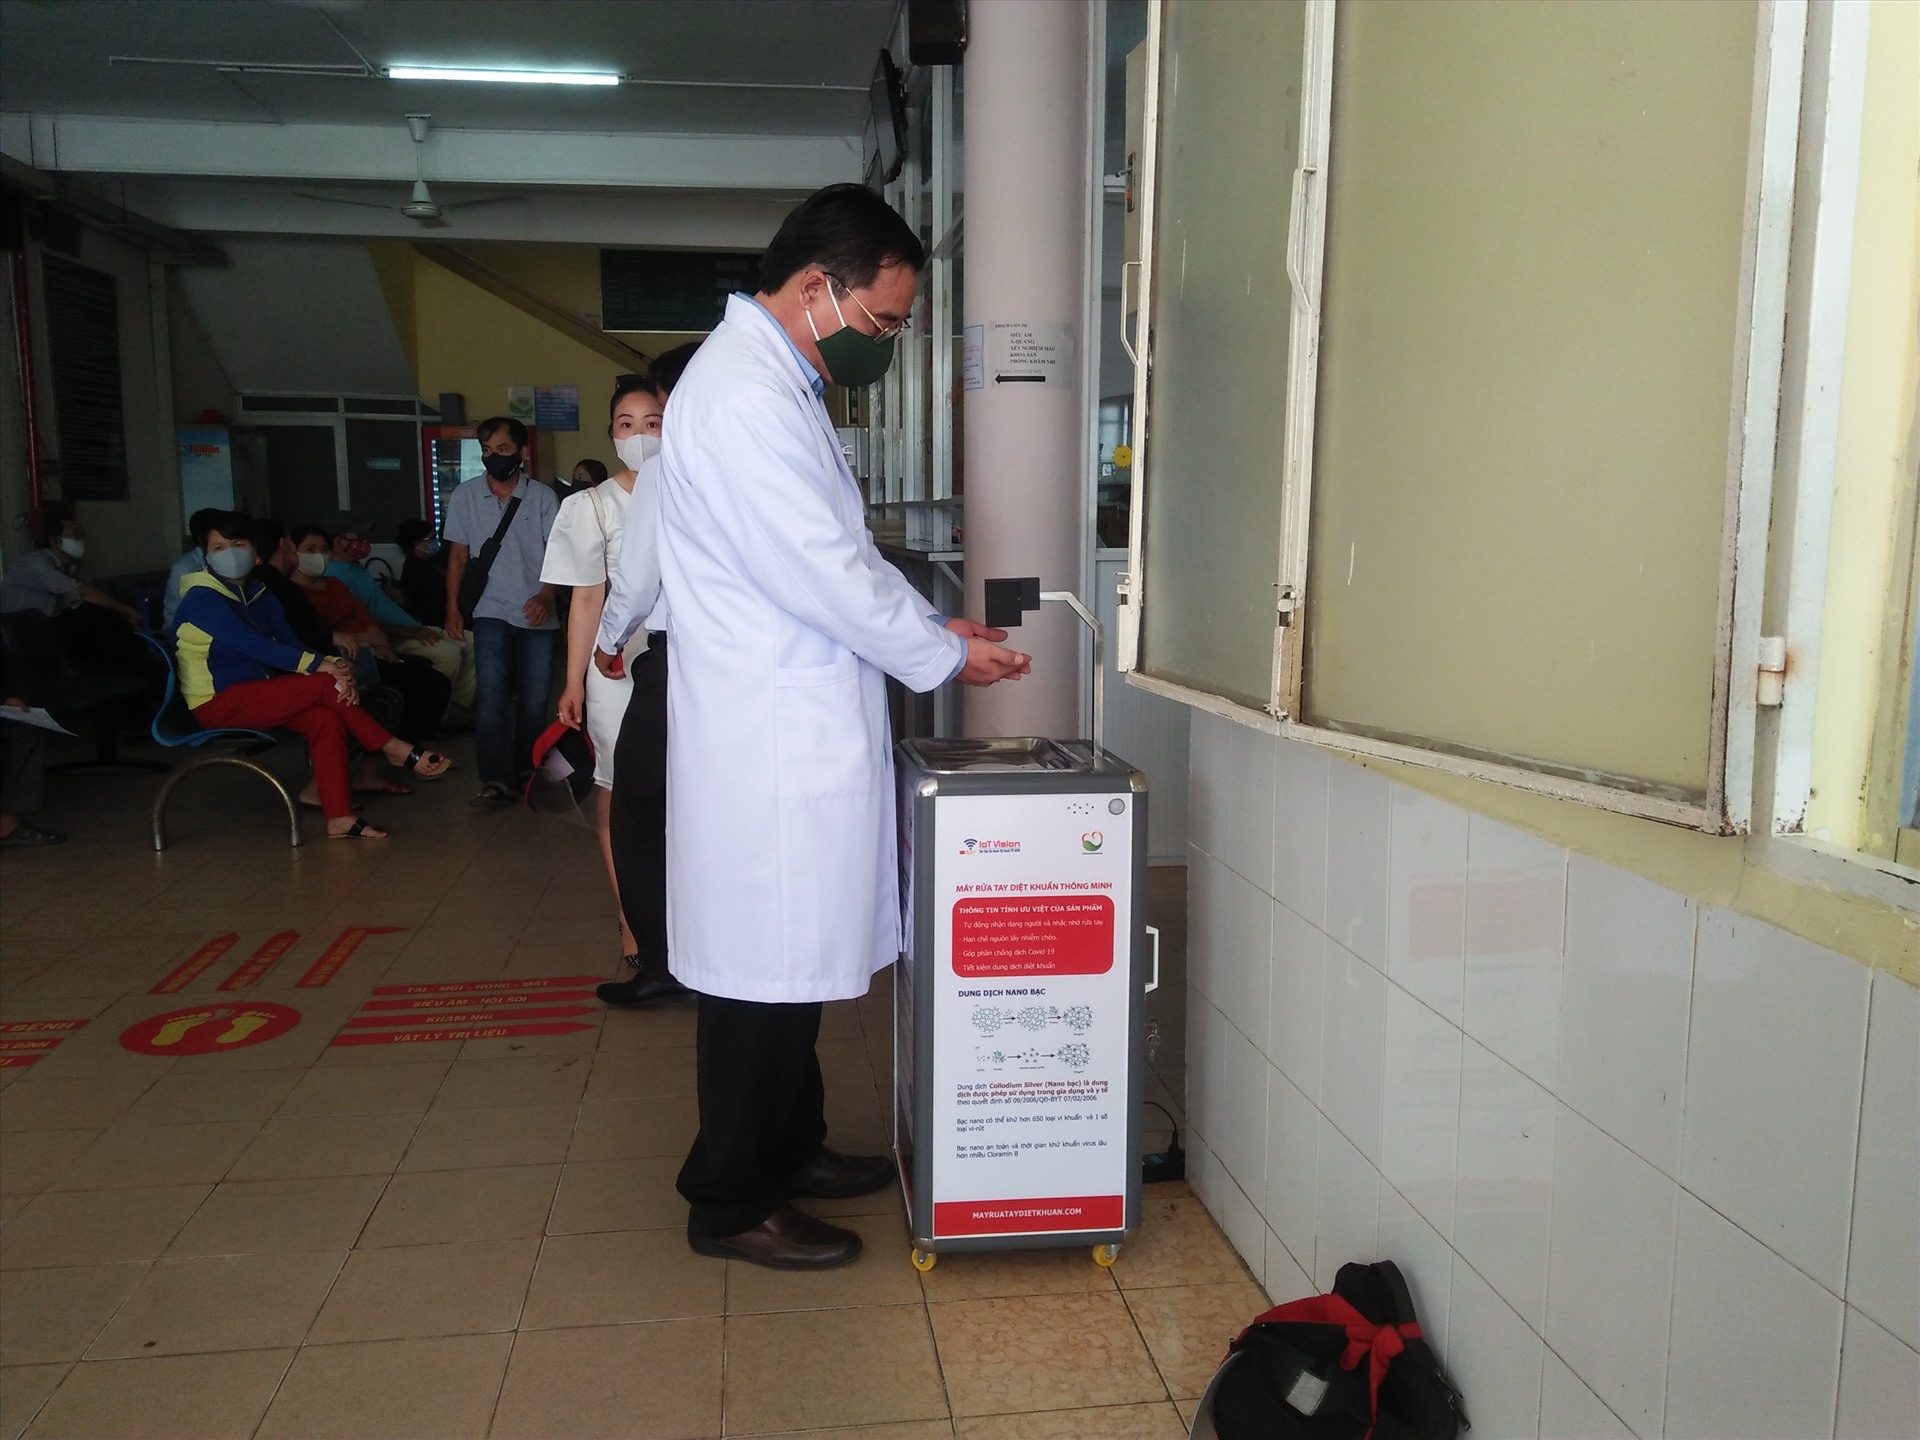 Máy rửa tay diệt khuẩn thông minh được tặng cho Bệnh viện quận 9. Ảnh MK